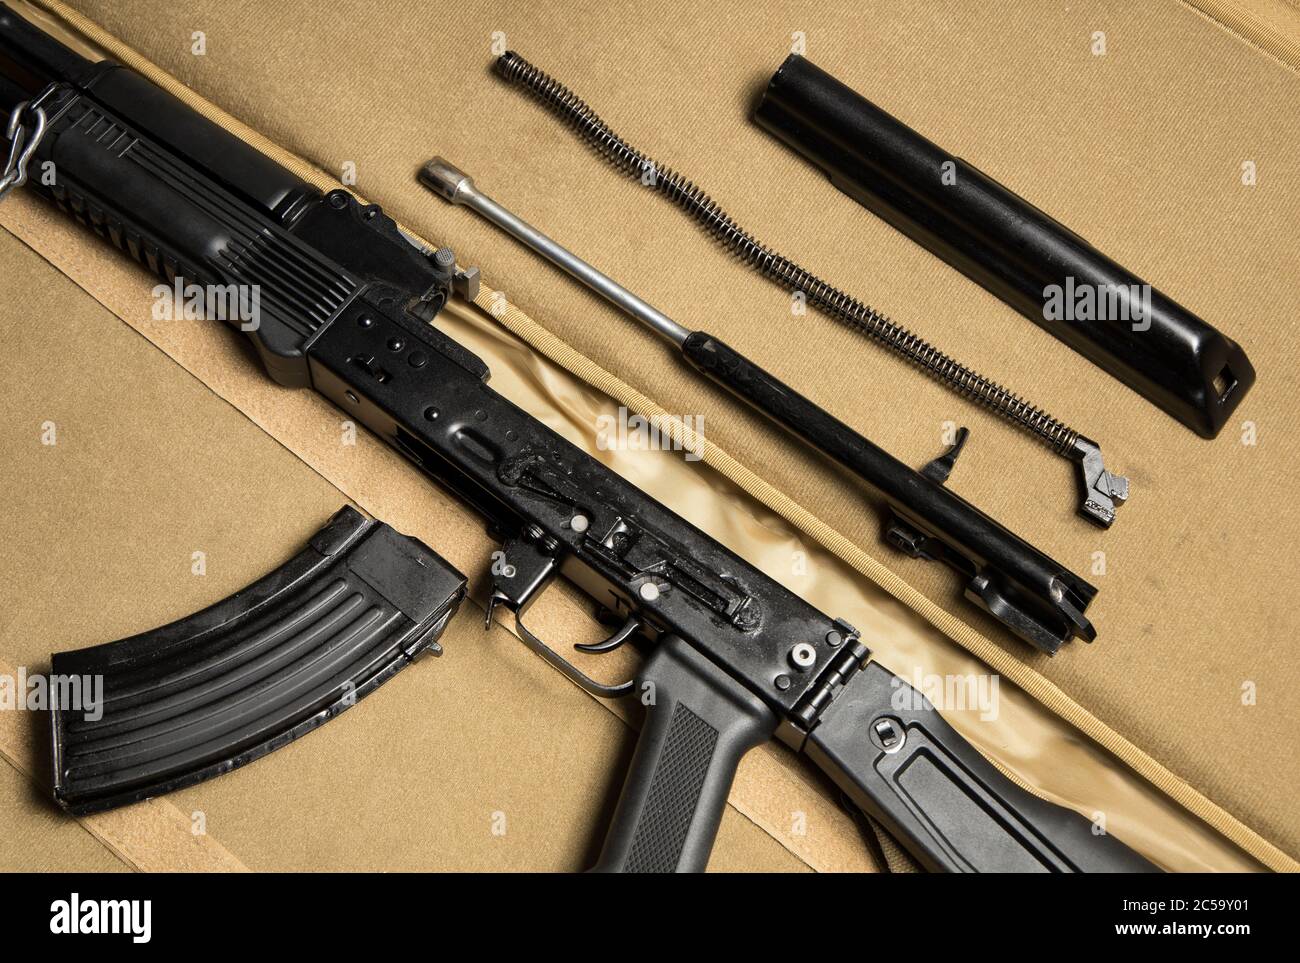 Vue de dessus des pièces de base d'un fusil d'assaut démonté. Russe Kalachnikov MKK-104 (dernière variante AK-47). Banque D'Images